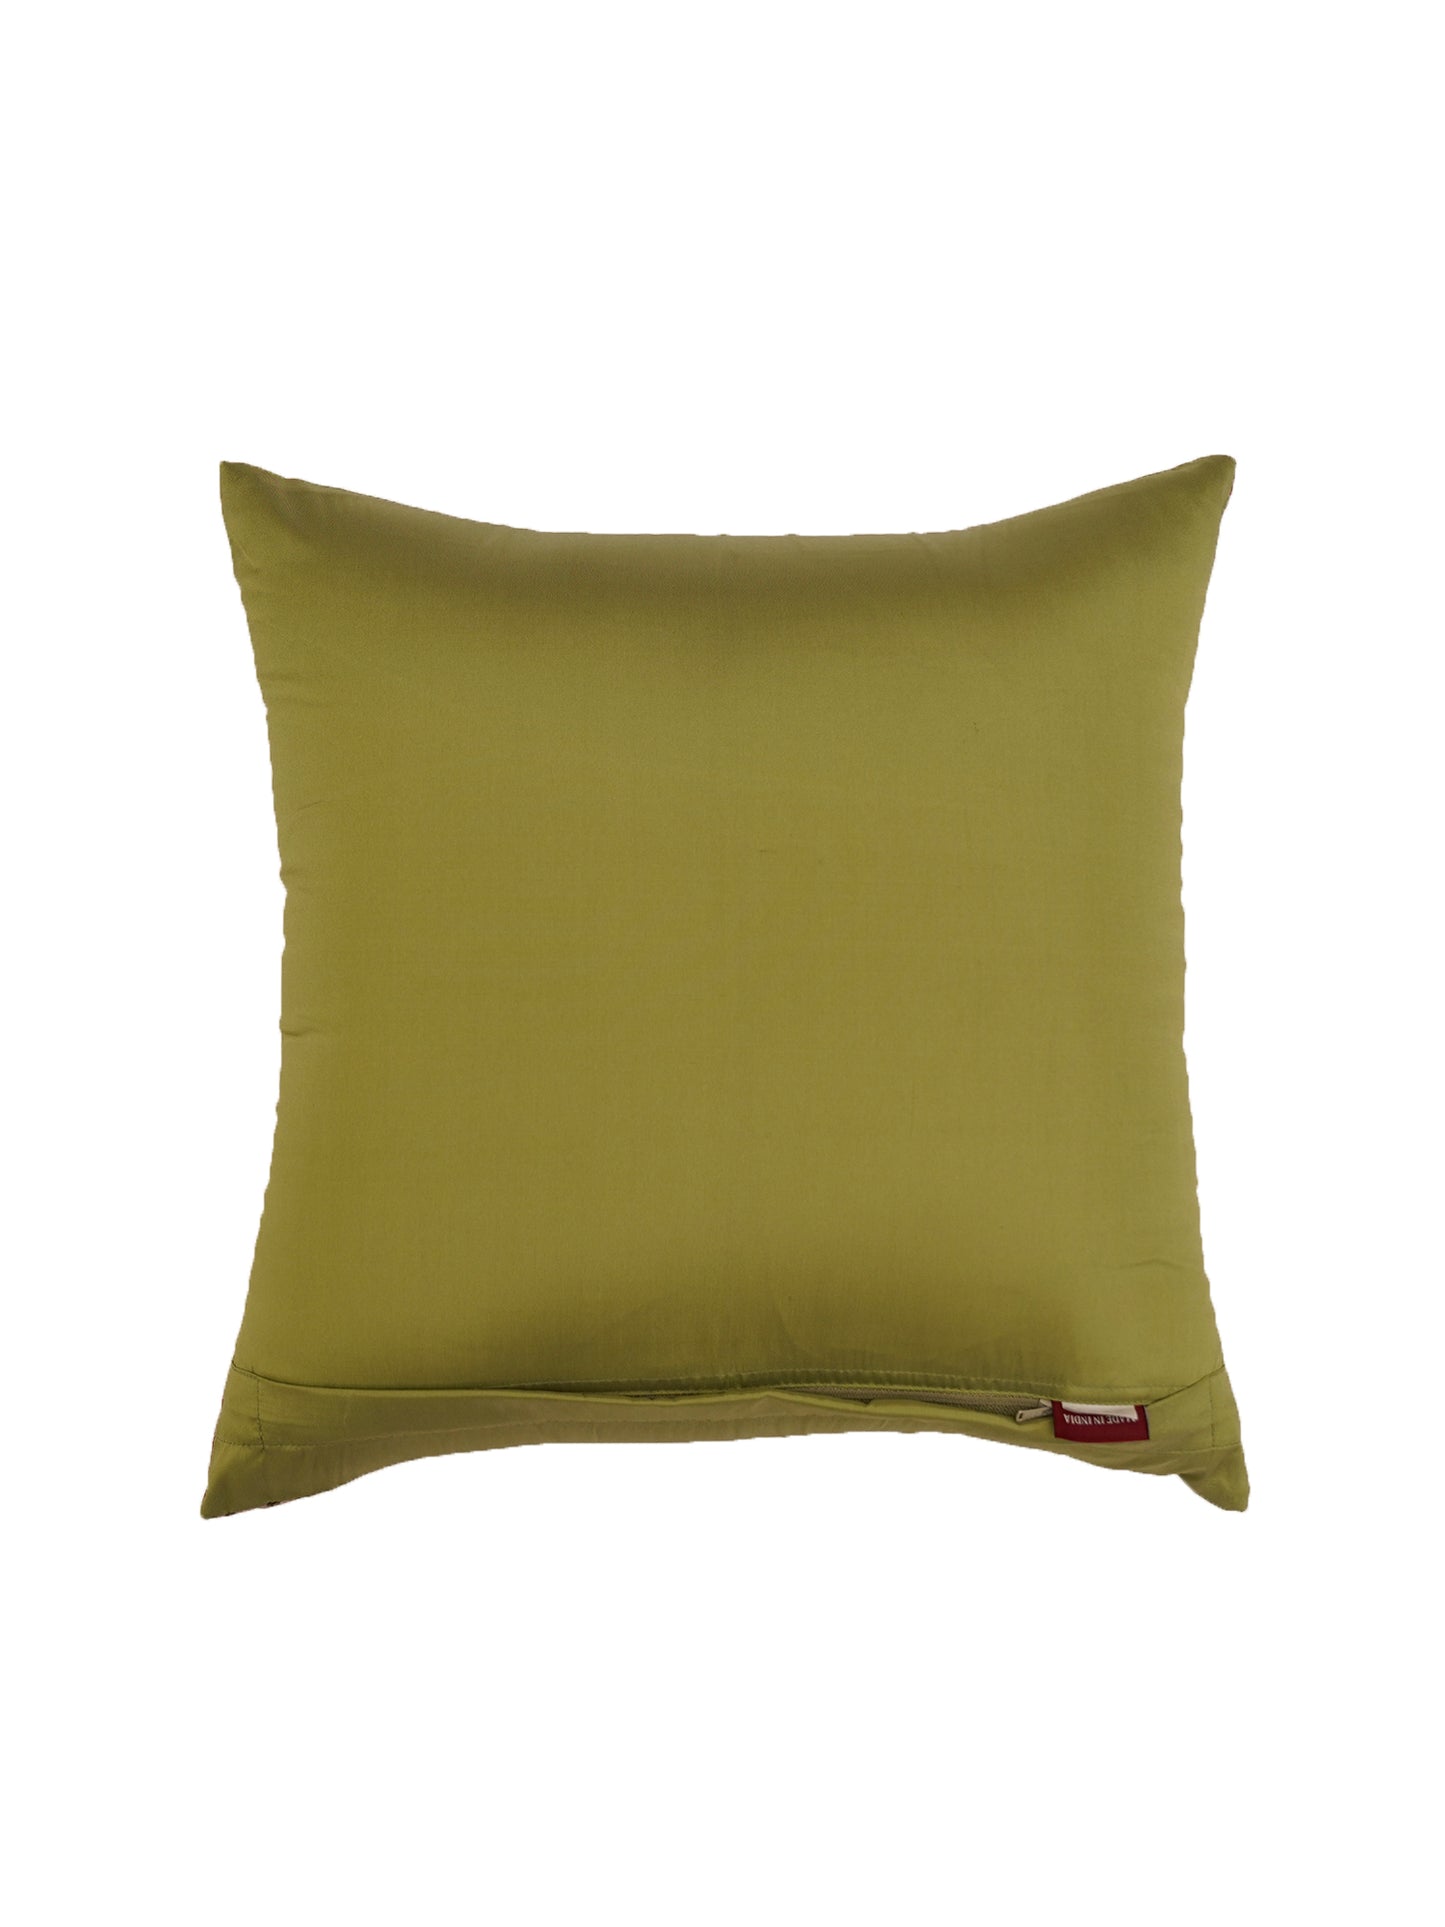 Cushion Cover Taffeta Modern Floral Beige - 16" X 16"